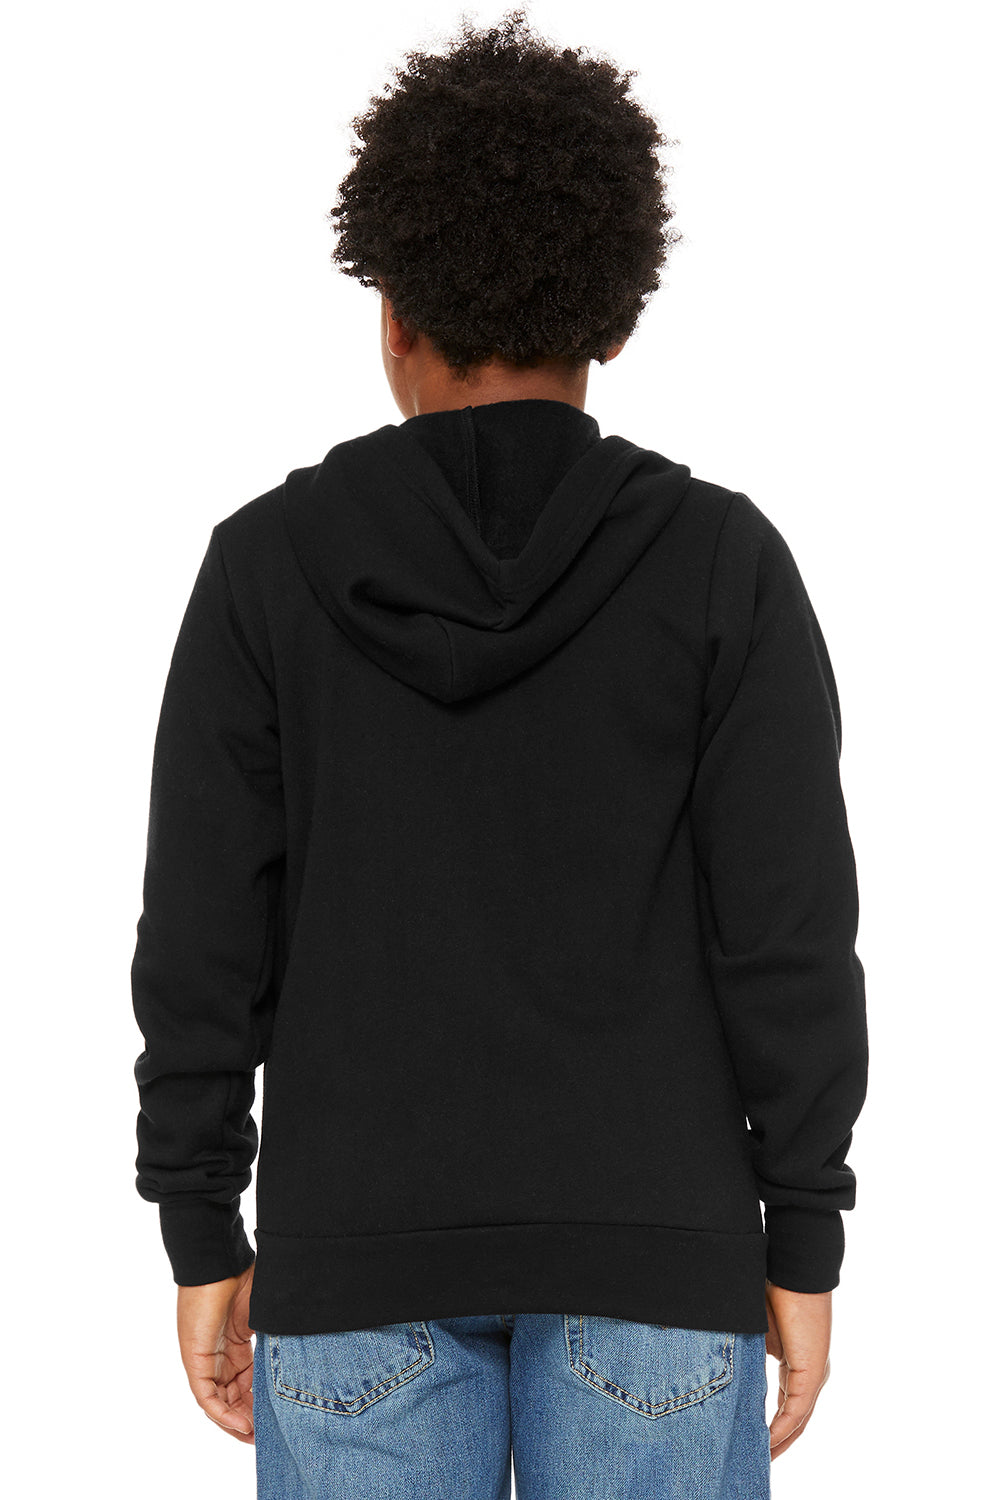 Bella + Canvas 3739Y Youth Sponge Fleece Full Zip Hooded Sweatshirt Hoodie Black Model Back